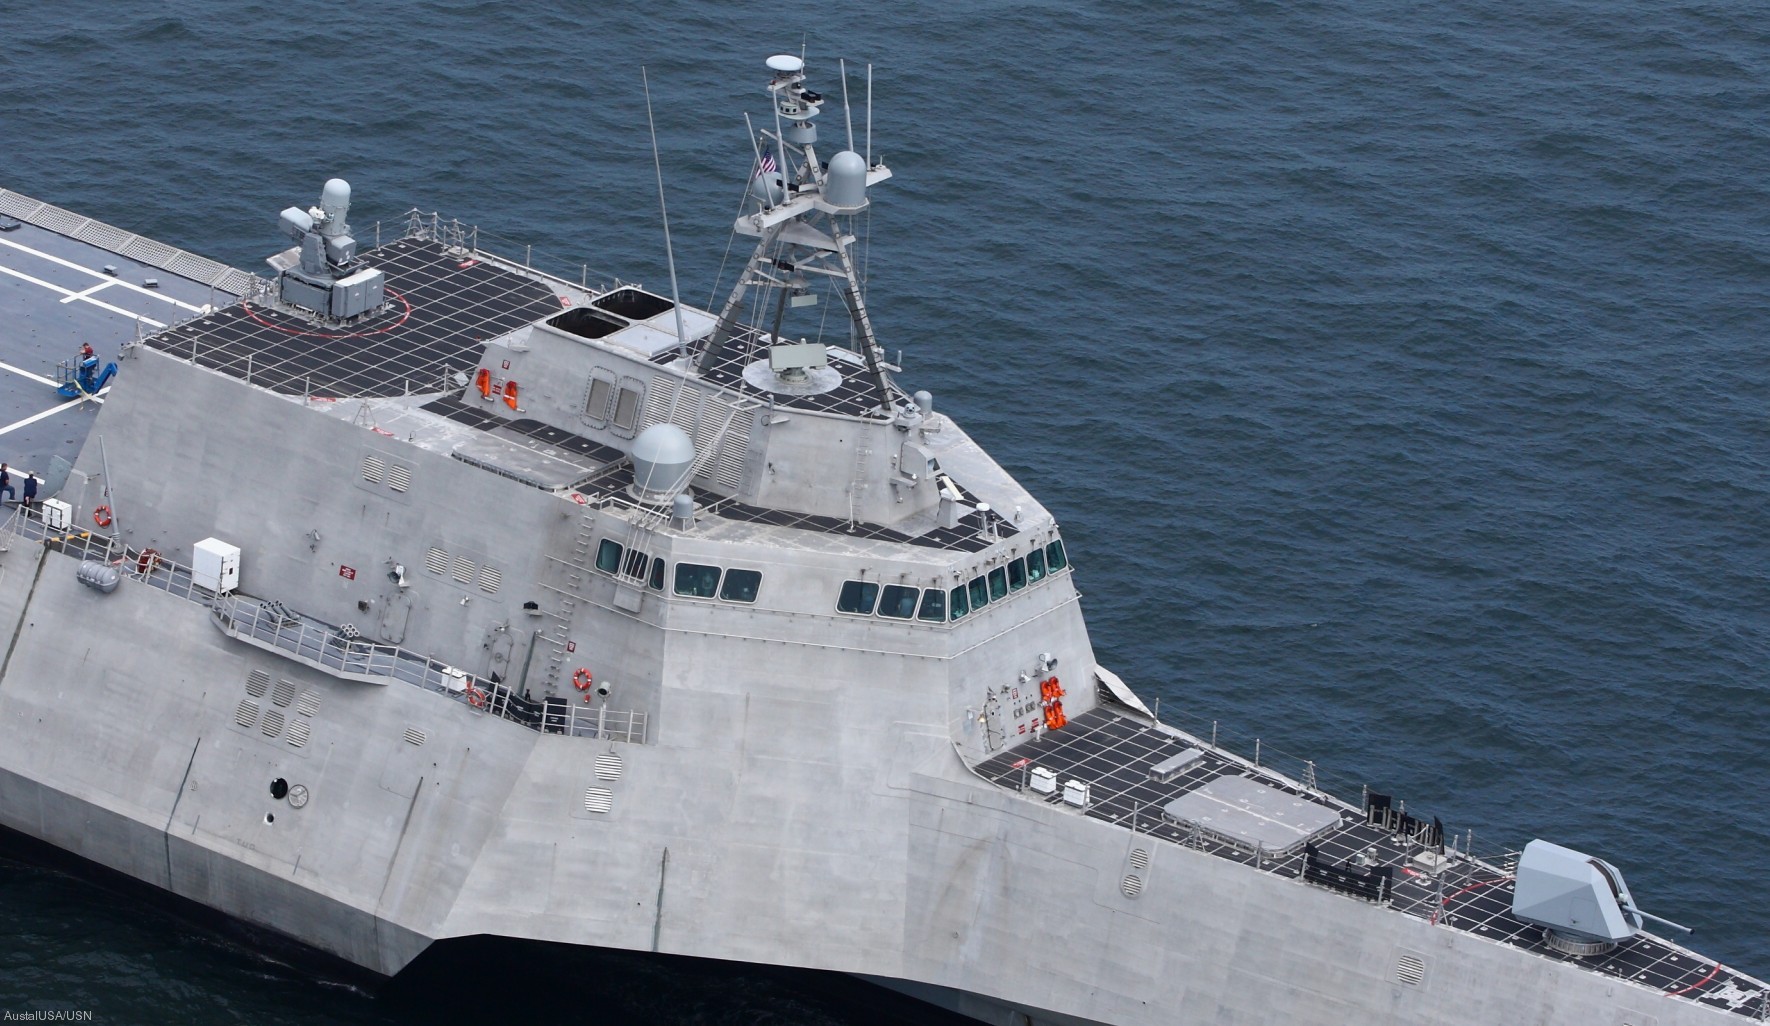 فئة الاستقلال سفينة قتالية ساحلية تابعة للبحرية الأمريكية تفاصيل التسلح